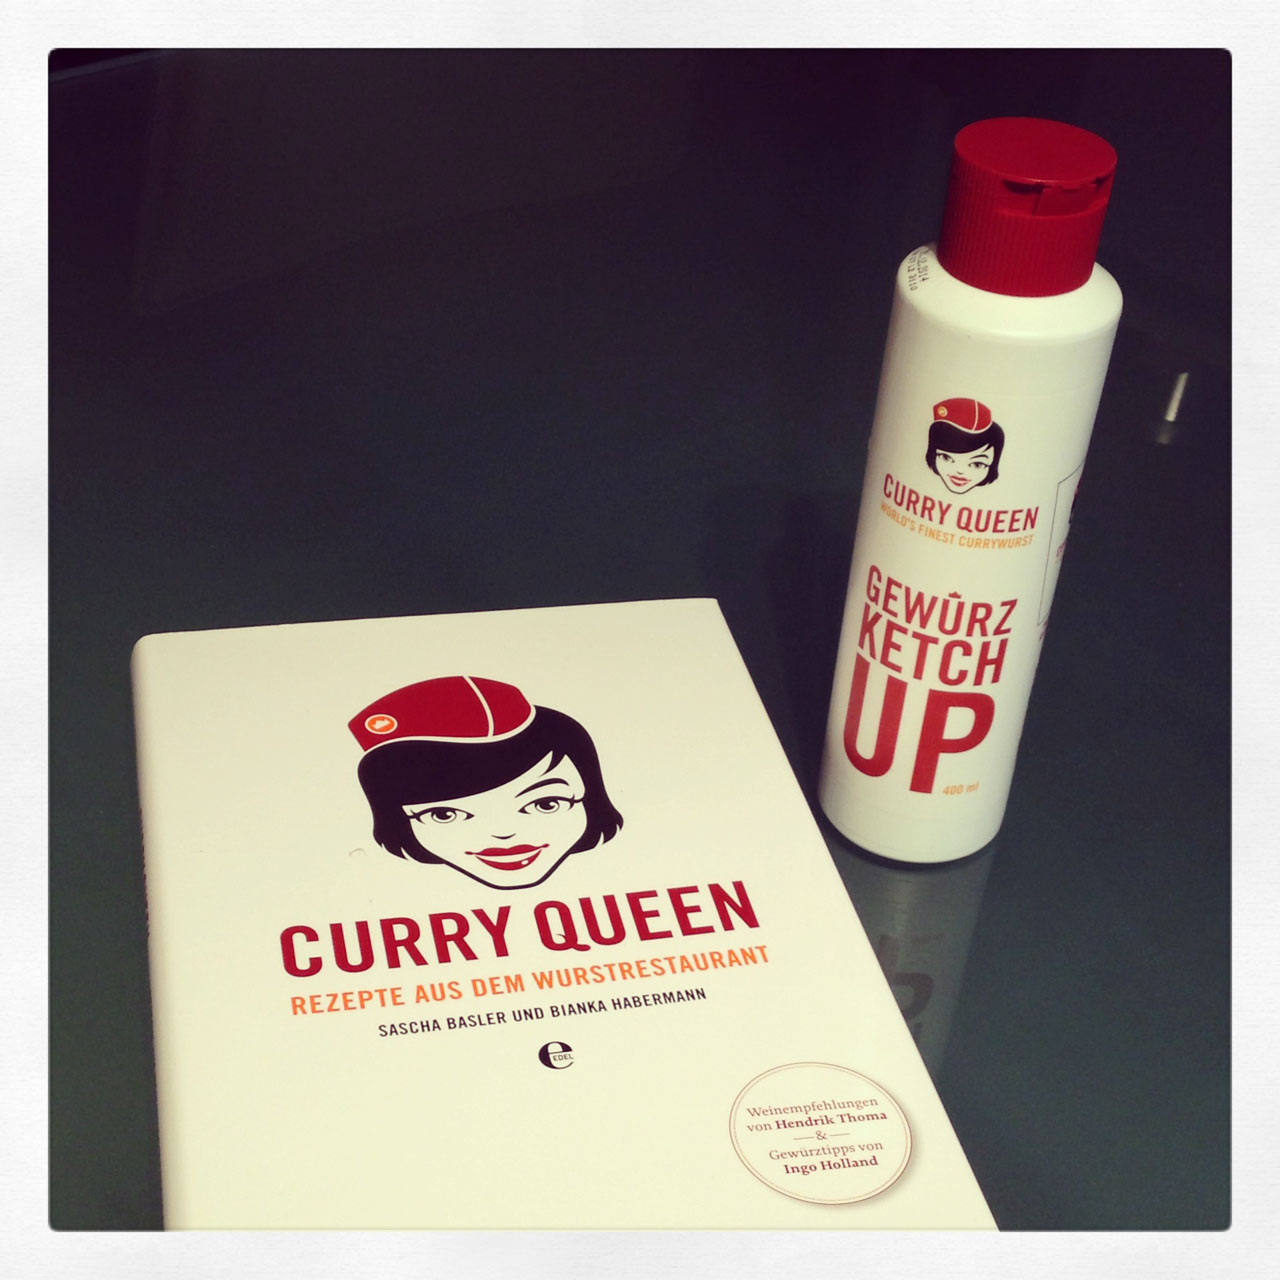 Curry Queen Gewürz KetchUP und Rezeptbuch